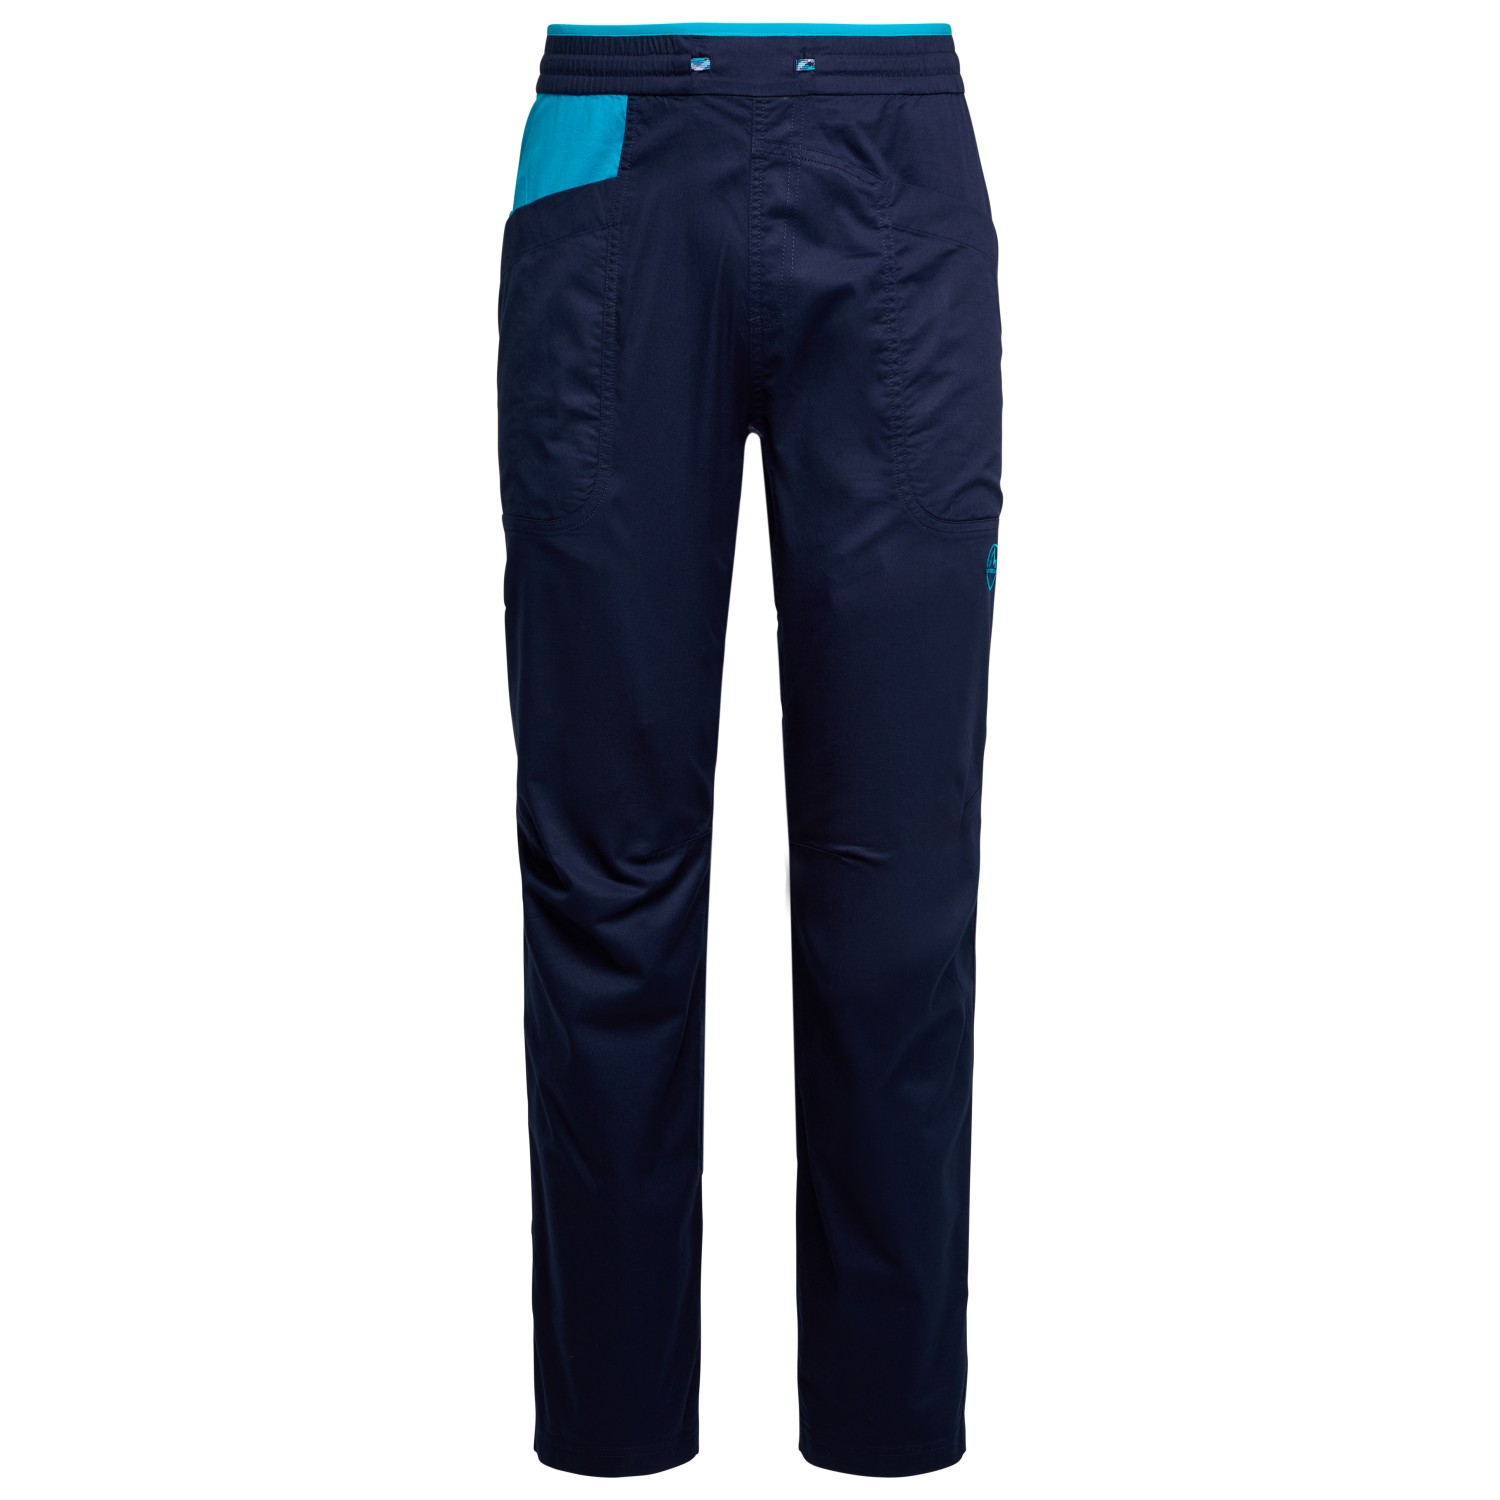 Альпинистские штаны La Sportiva Bolt Pant, цвет Deep Sea/Tropic Blue